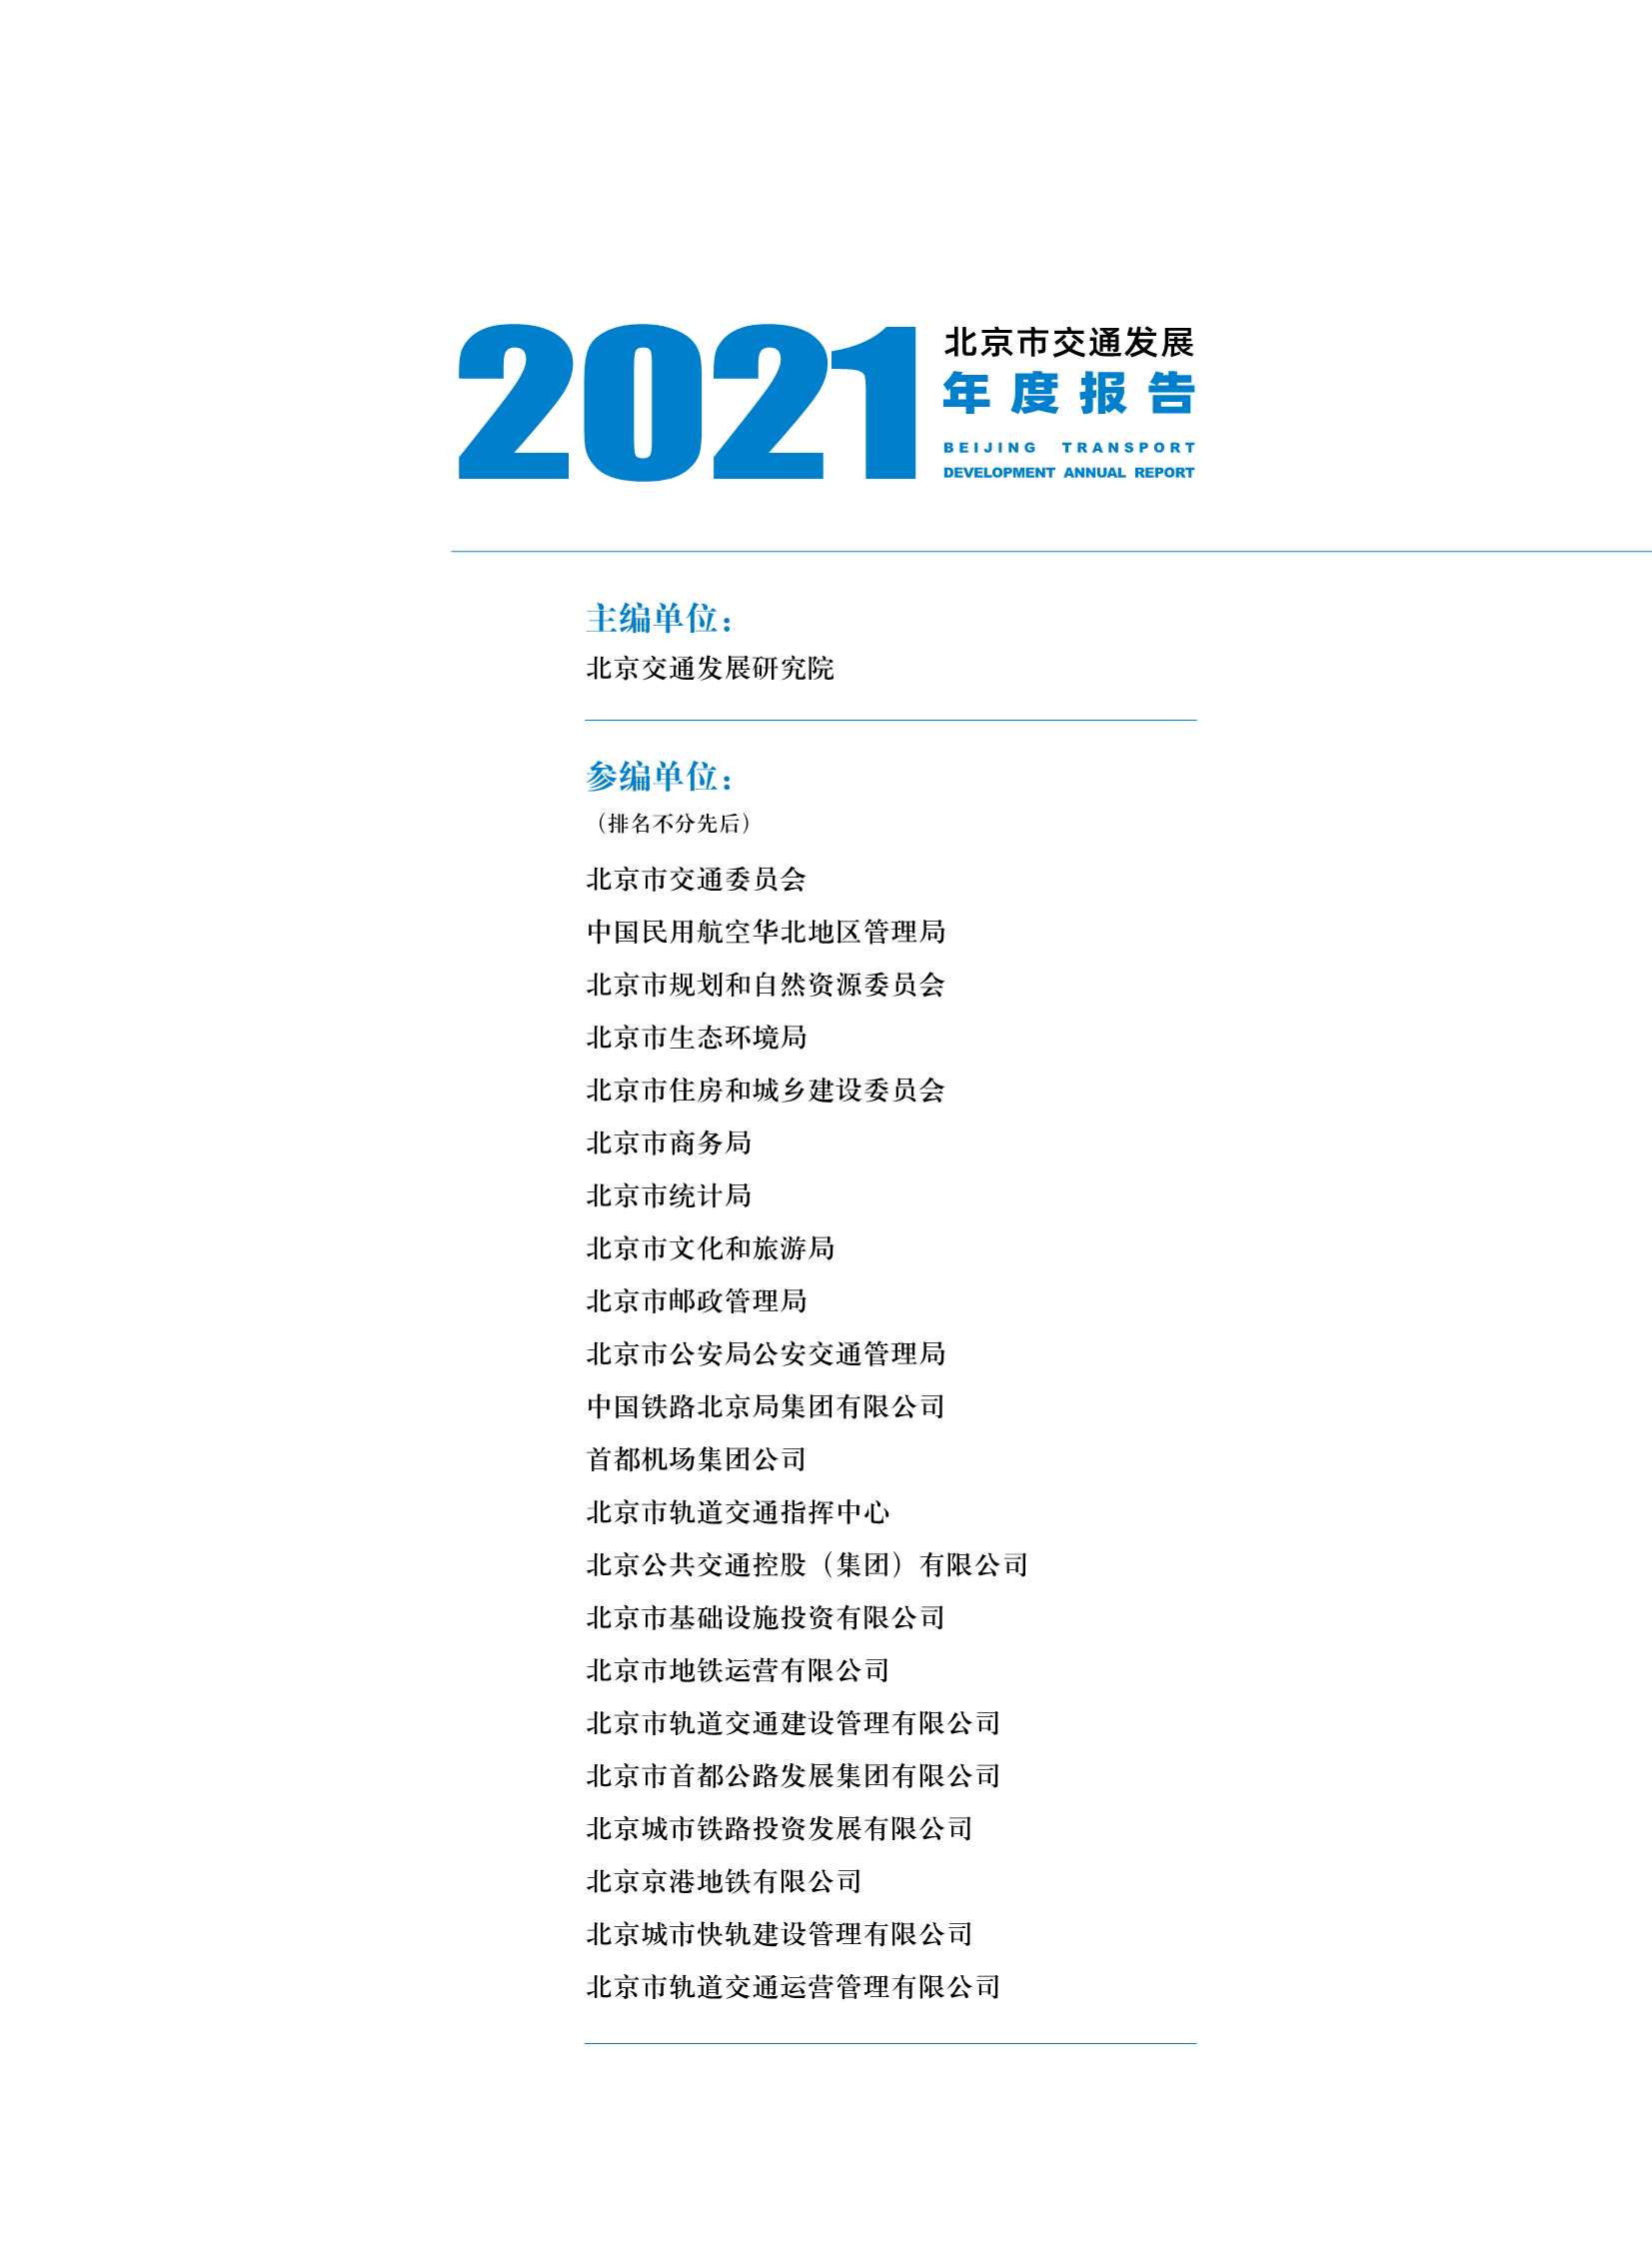 北京交通发展研究院-2021年北京交通发展年度报告-2021.09-145页